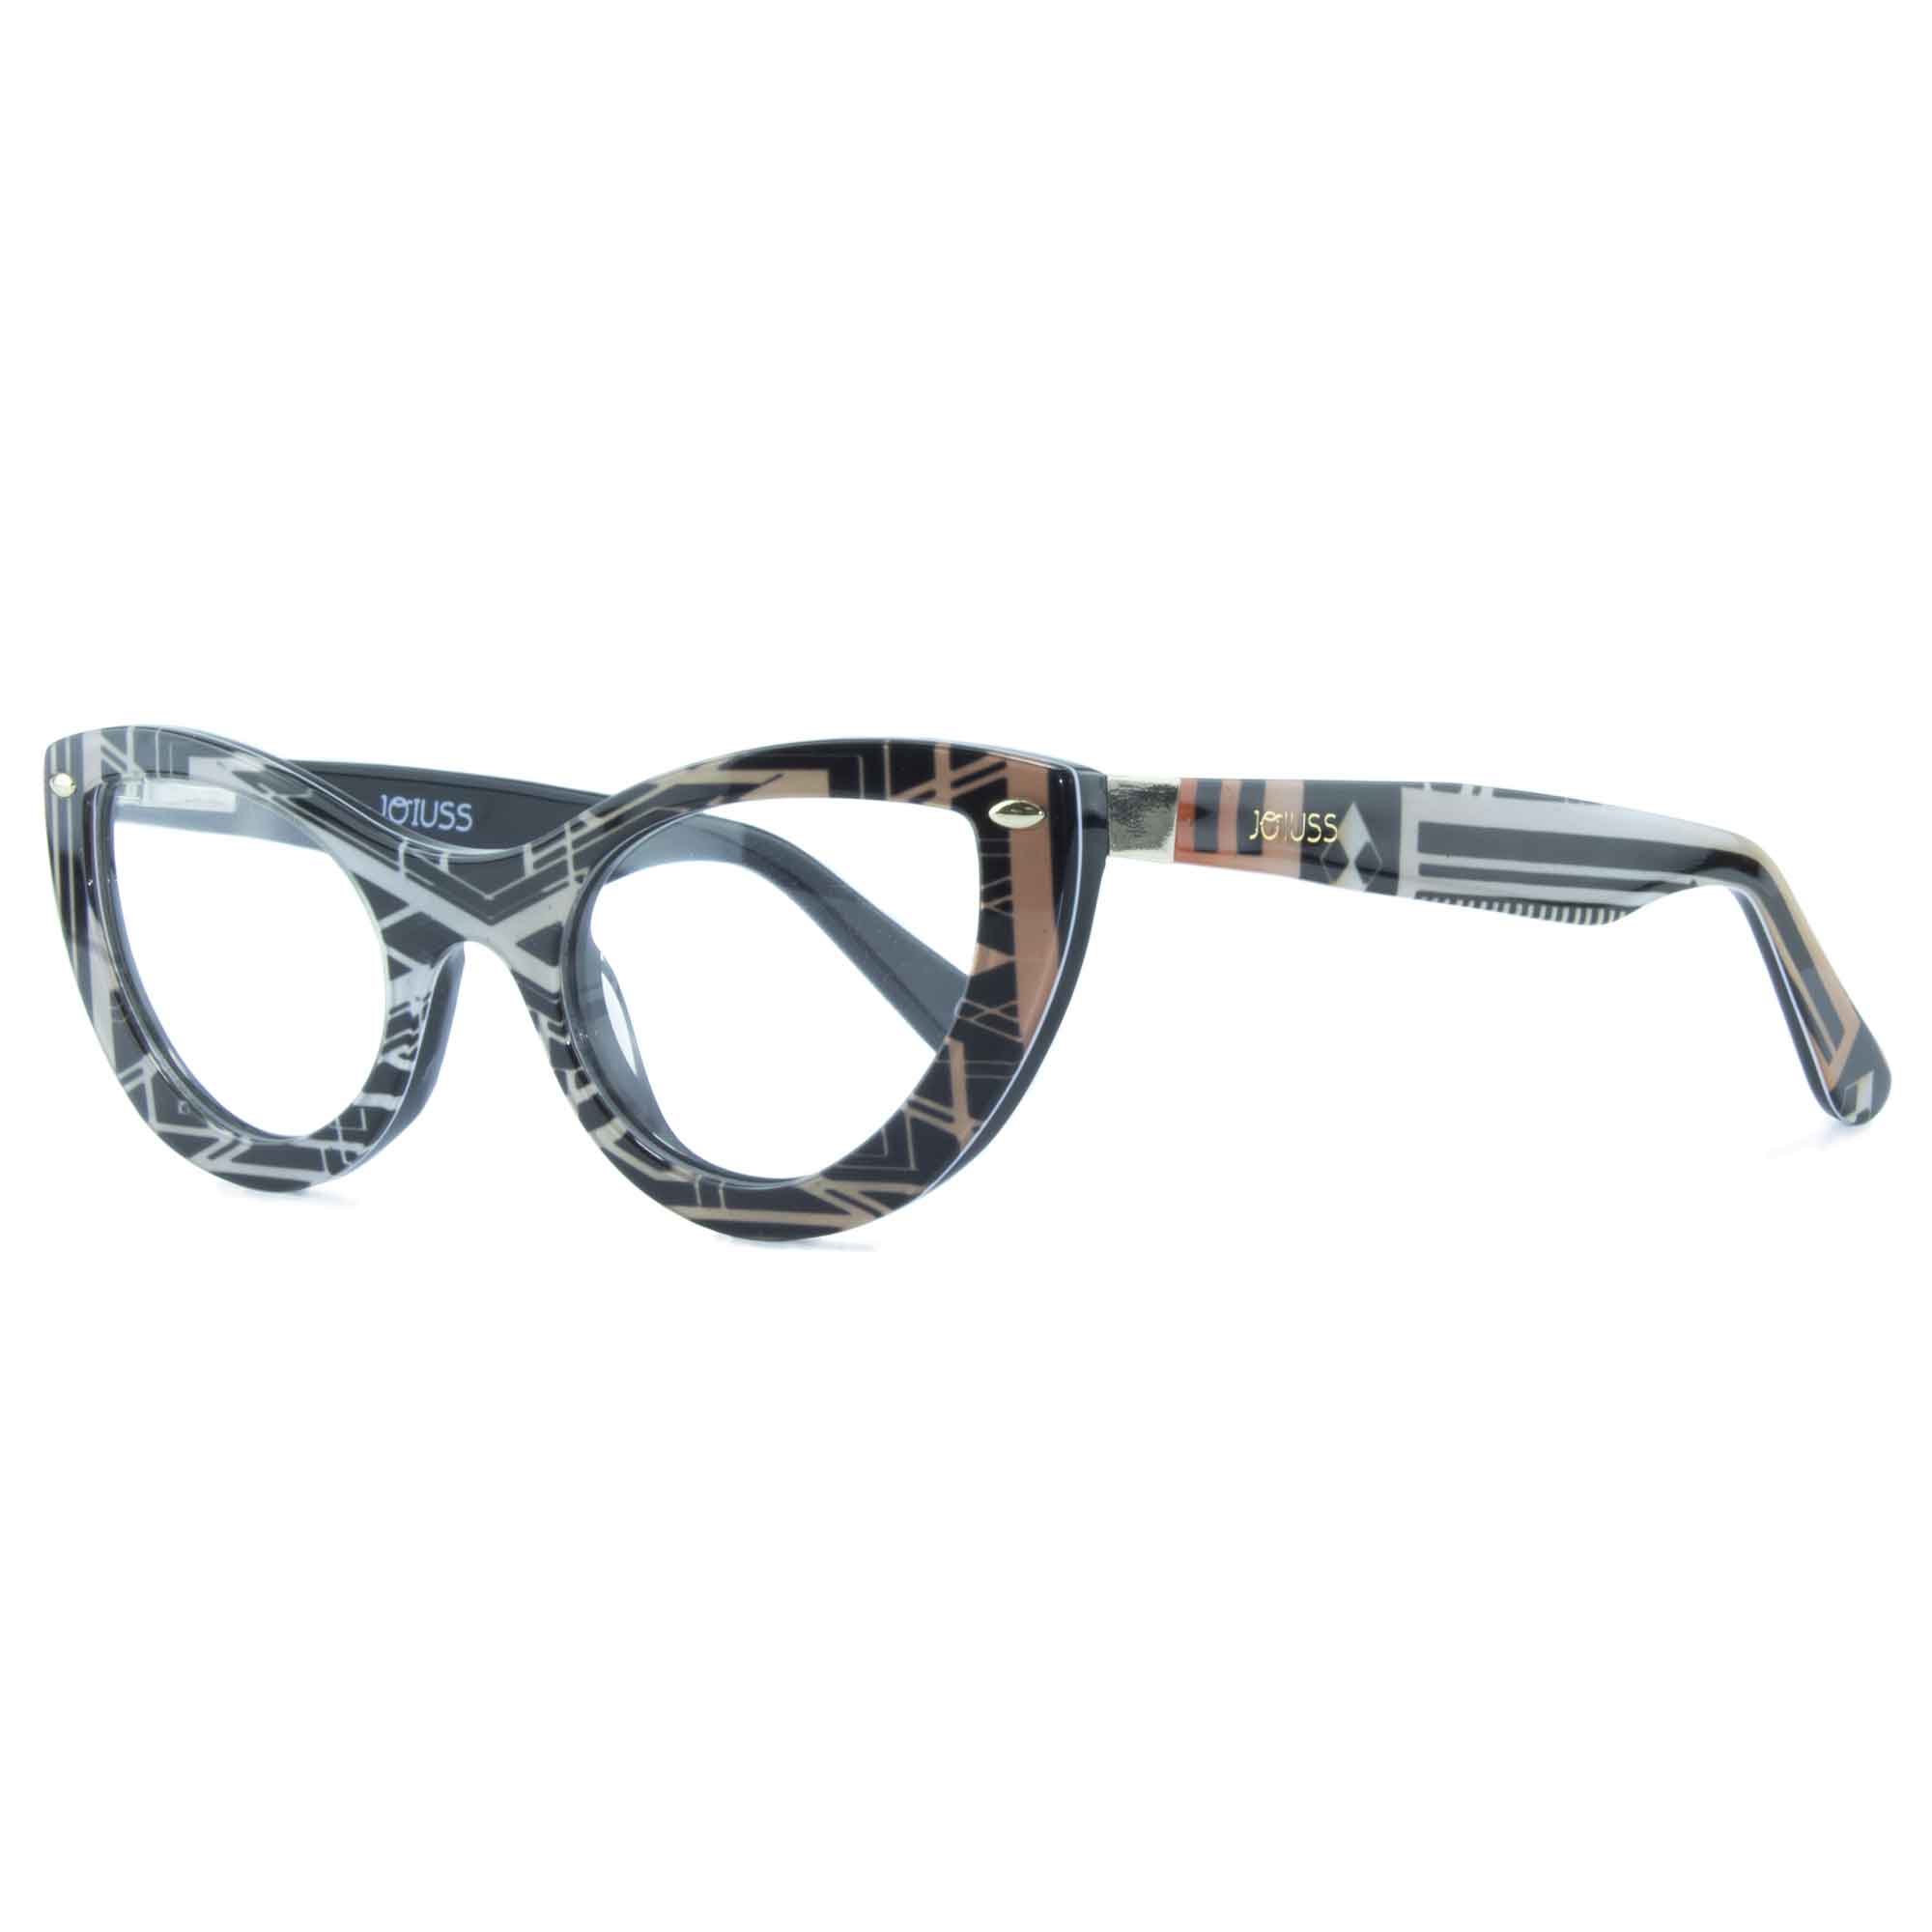 Cat Eye Glasses - Black & Gold - Gatsby